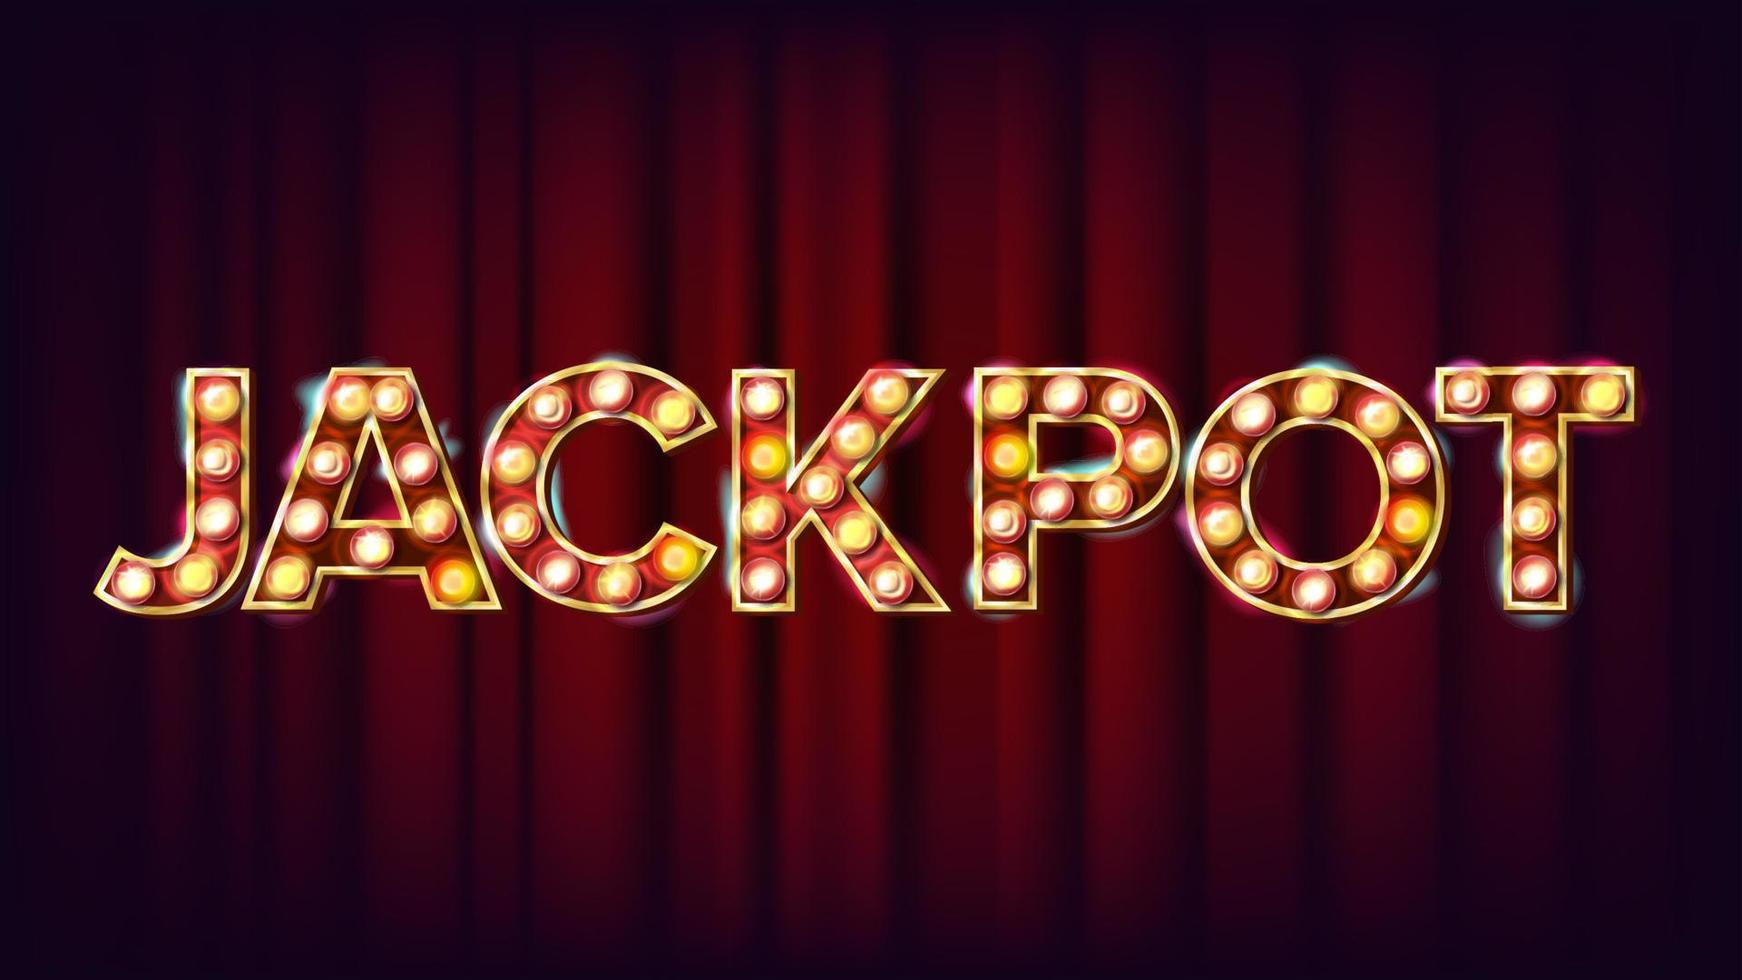 Jackpot-Banner-Vektor. Casino leuchtendes Lichtzeichen. für Lotterie, Poker-Werbedesign. Risikoabbildung vektor